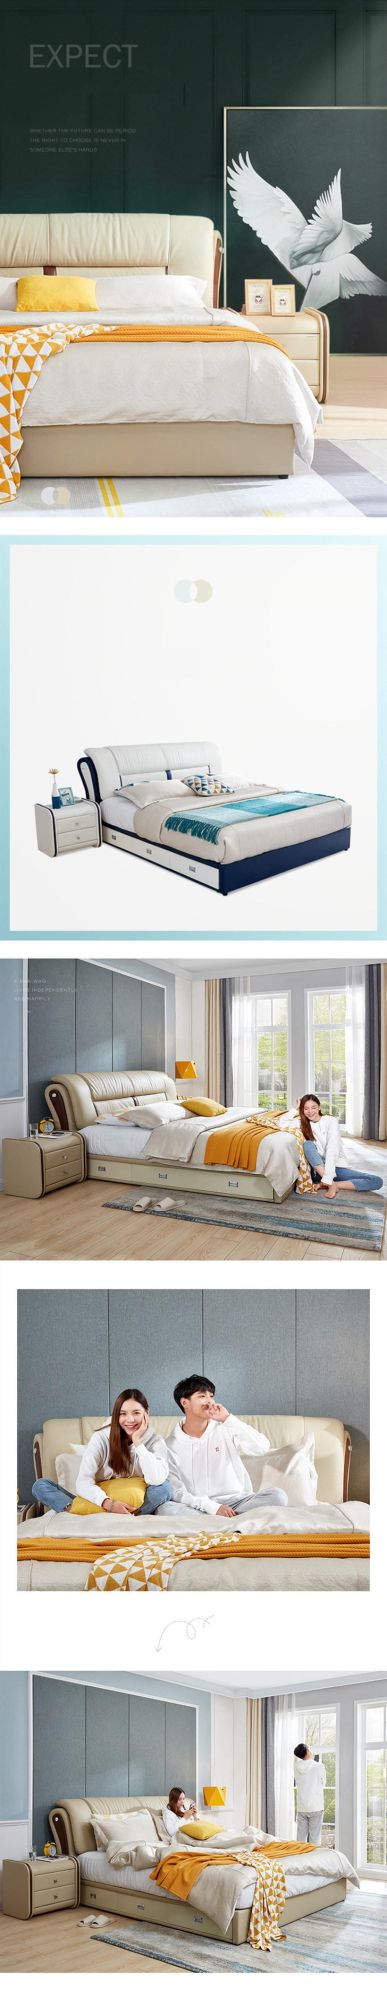 Modern Simple Modular Shelf Soft #Bed Bedroom Furniture 0180-5